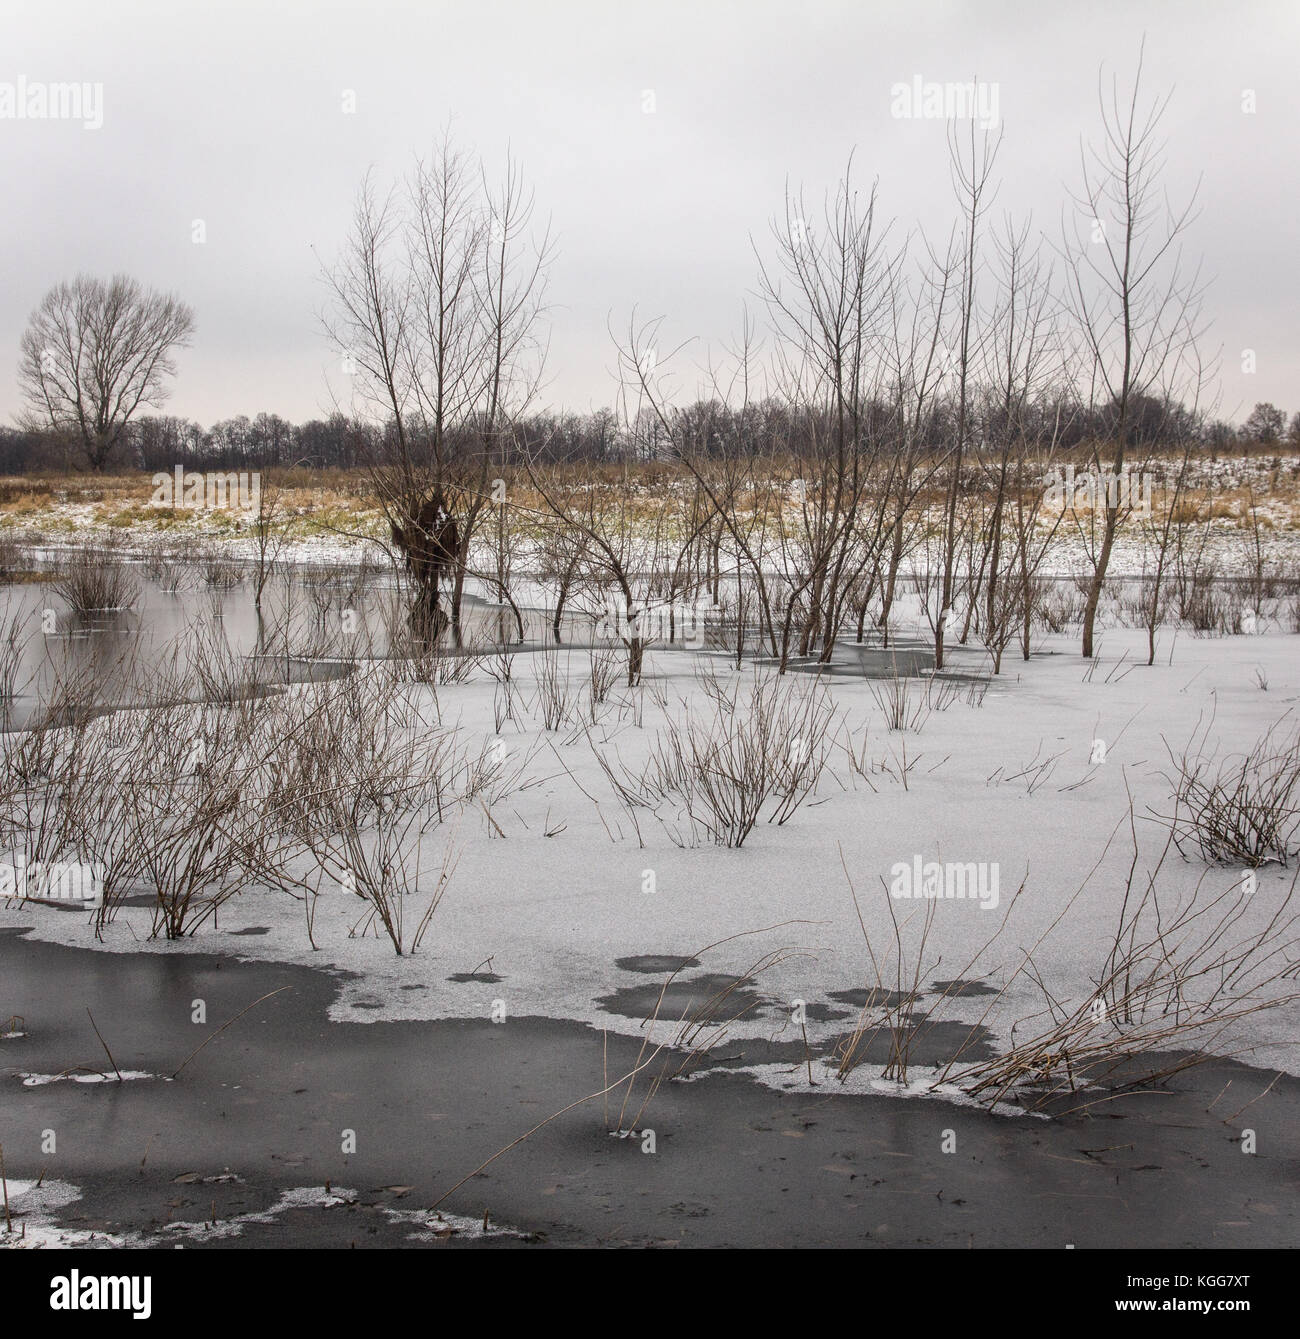 La fin de l'automne.Un étang sous la glace mince avec de l'herbe et côtière de la rive couvertes avec la première neige avec de rares trembles. Banque D'Images